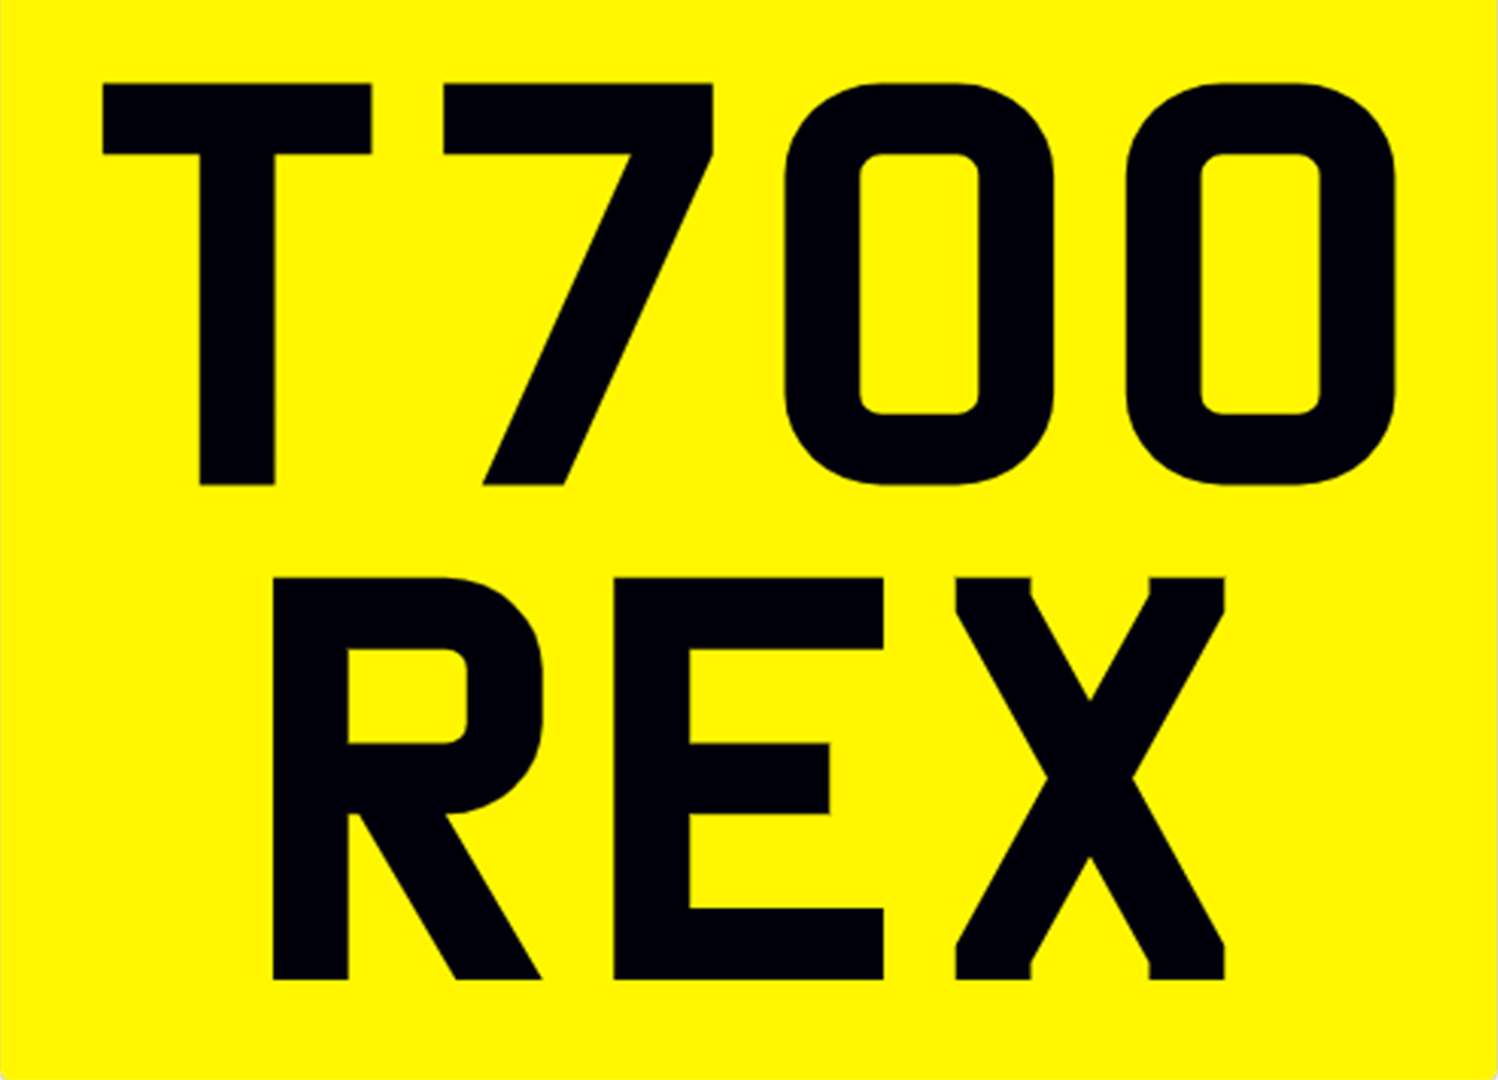 <p>&nbsp; T700 REX Registration Number&nbsp;</p>